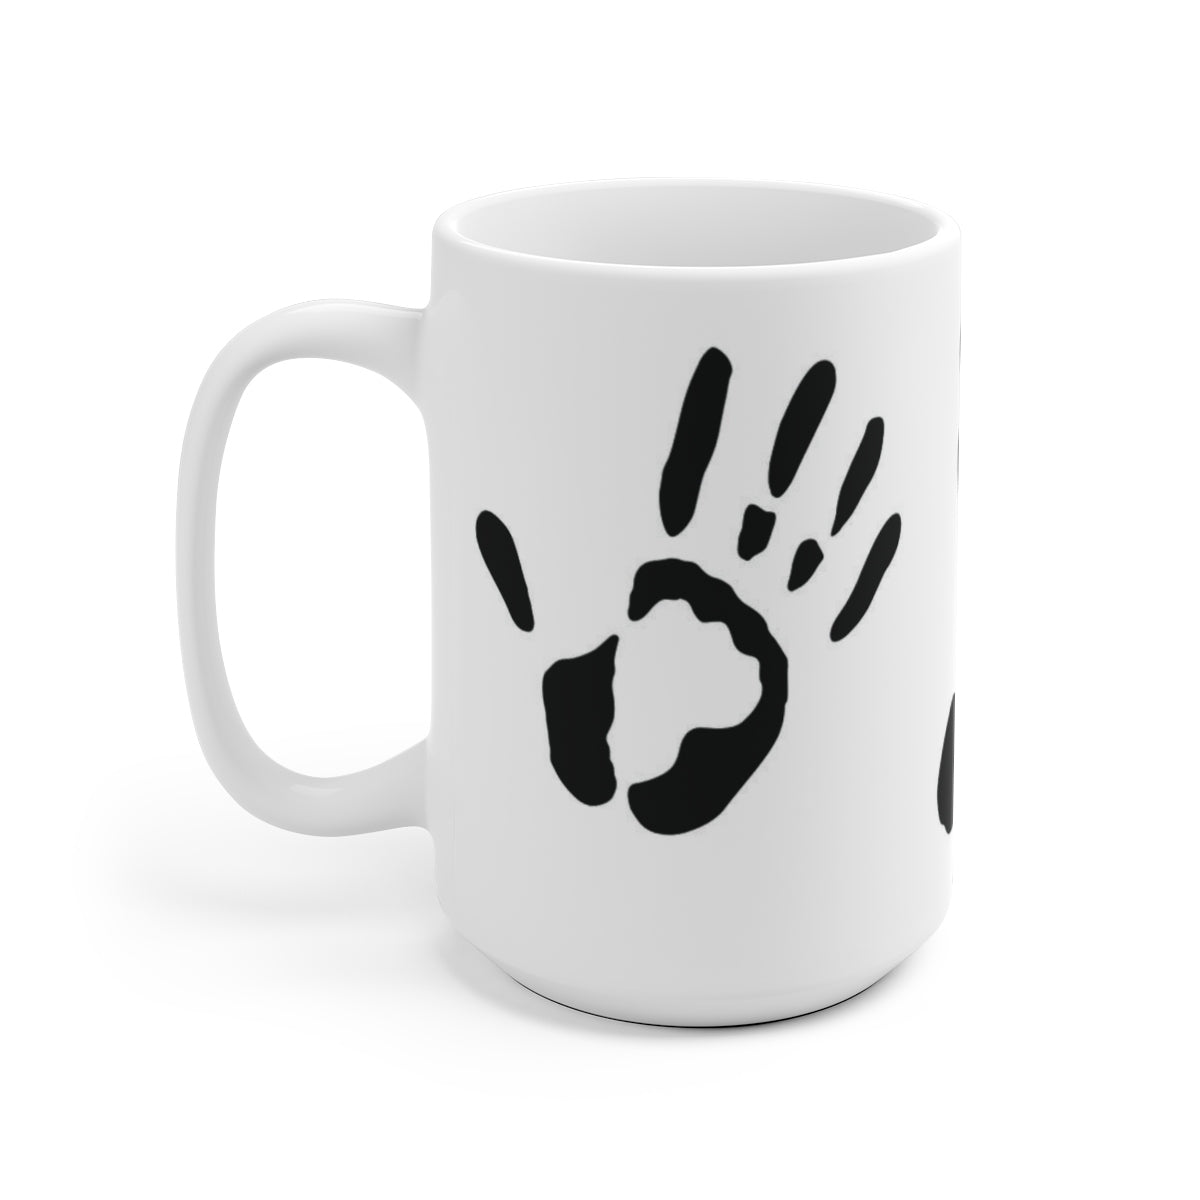 Five Toes Down Ceramic Mug